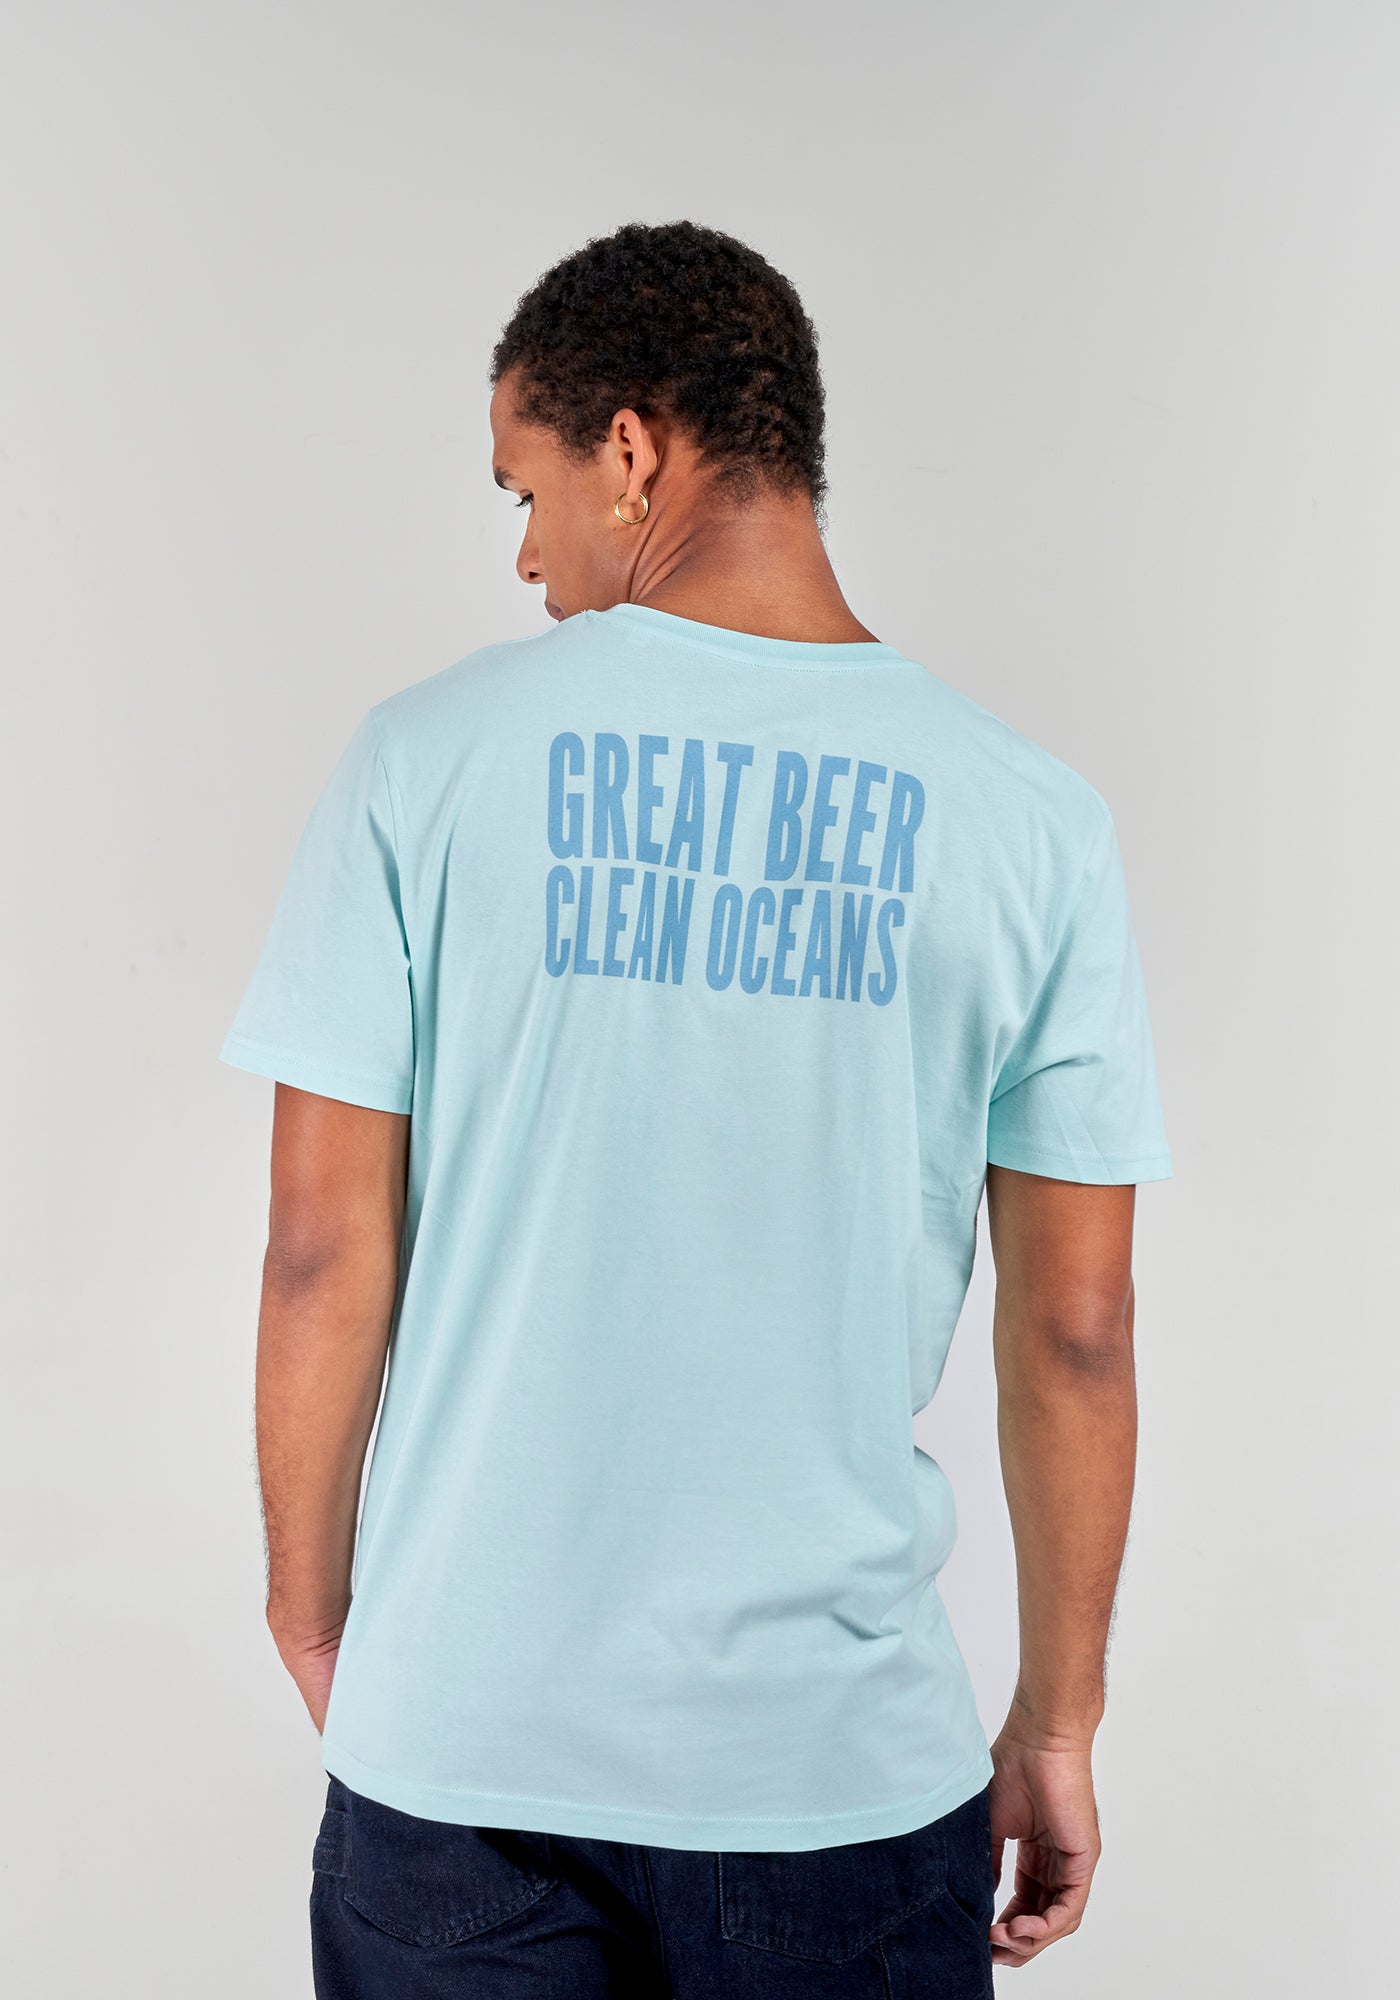 Great Beer. Clean Oceans T-Shirt